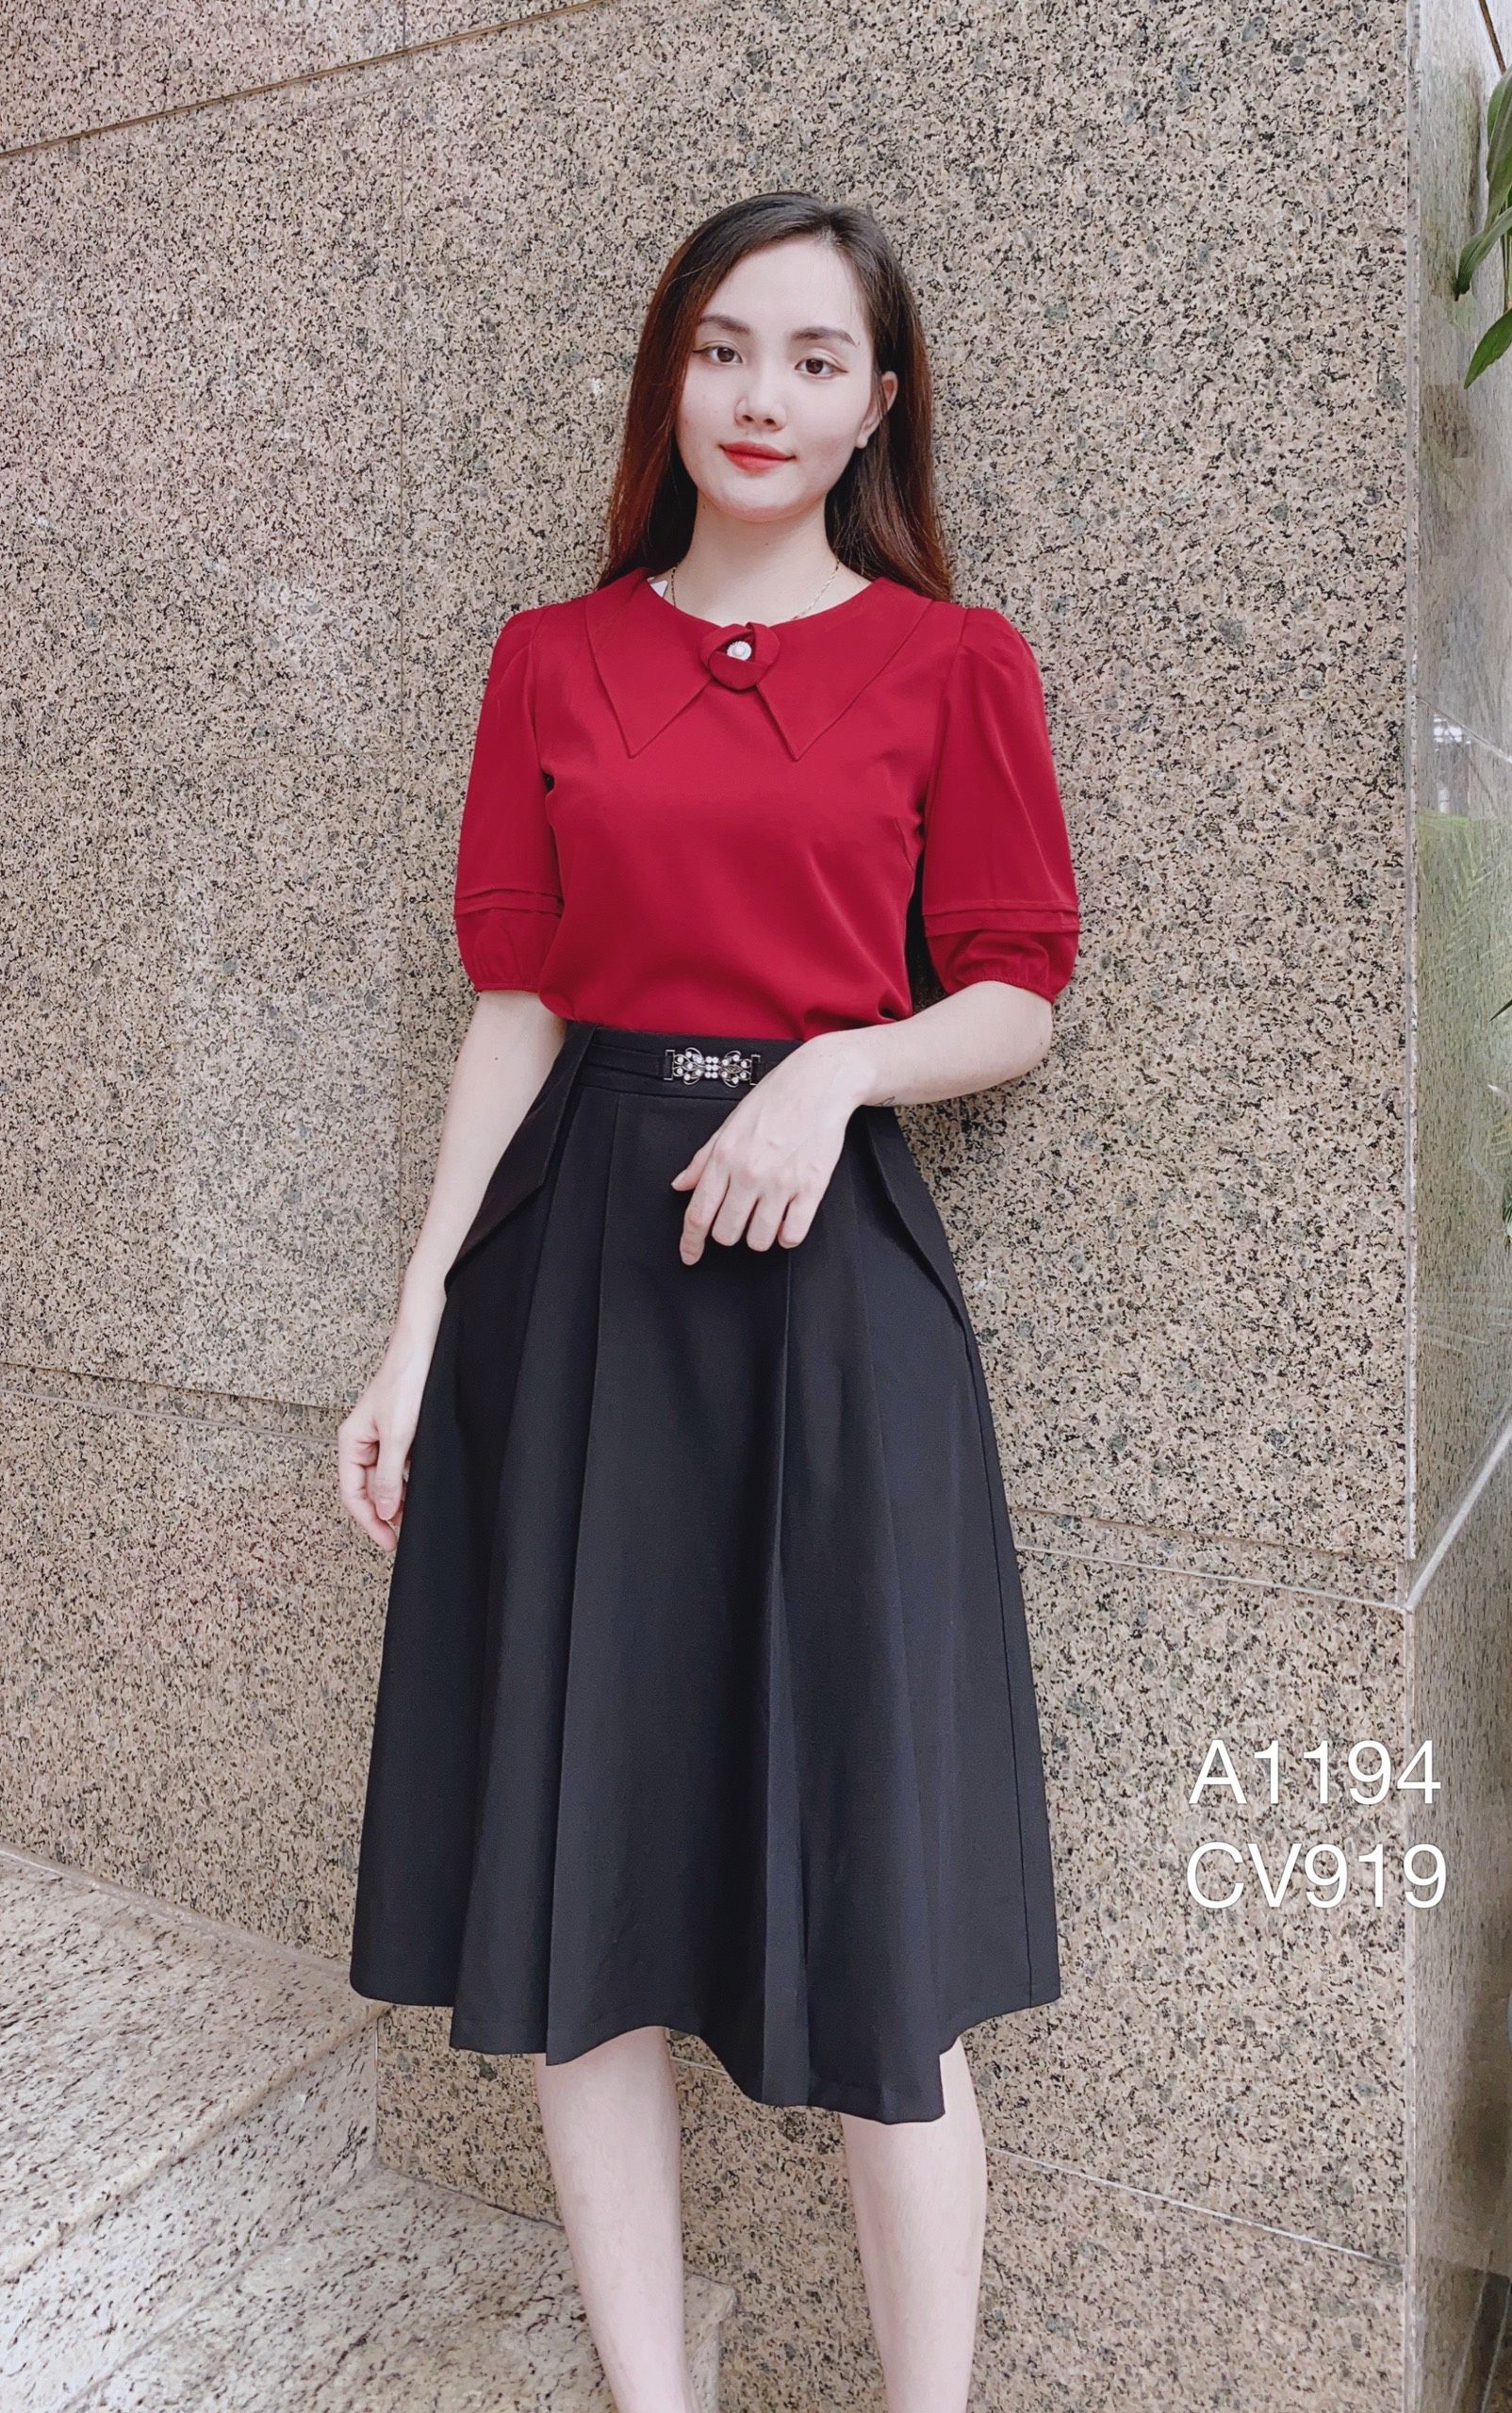 Chân váy đỏ dáng xòe lưng cao CV07-12 | Thời trang công sở K&K Fashion